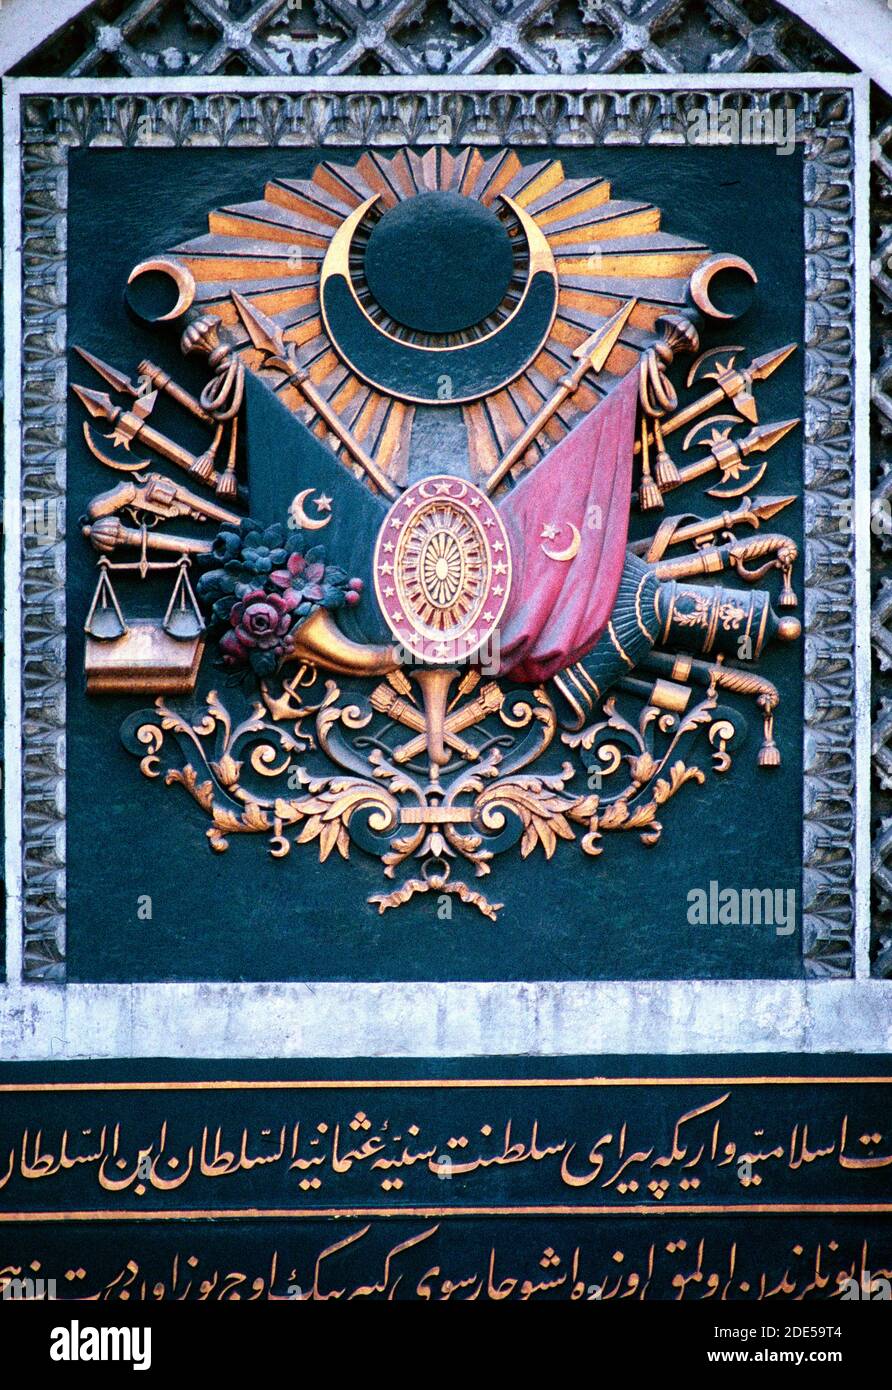 Osmanisches oder türkisches Wappen mit Flaggen, Heraldik, islamischem und türkischem Symbolismus großer Basar oder überdachter Basar Istanbul Türkei Stockfoto